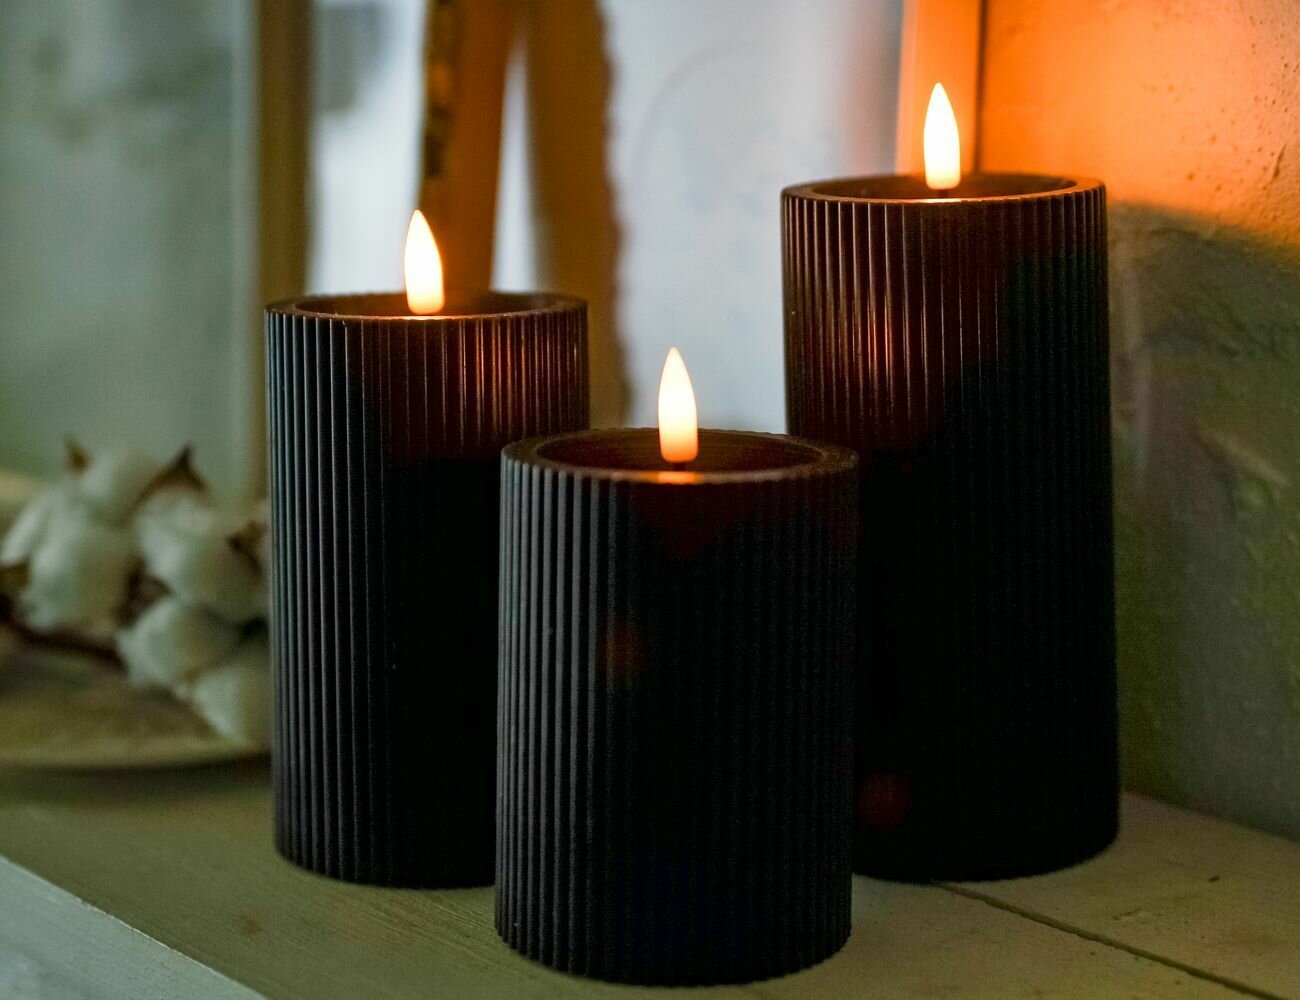 Светодиодные восковые свечи пилар, чёрные, тёплые белые LED-огни мерцающие, "натуральный фитилёк", 7.5х10/12.5/15 см, таймер, 3 шт, батарейки, Edelman 1134651